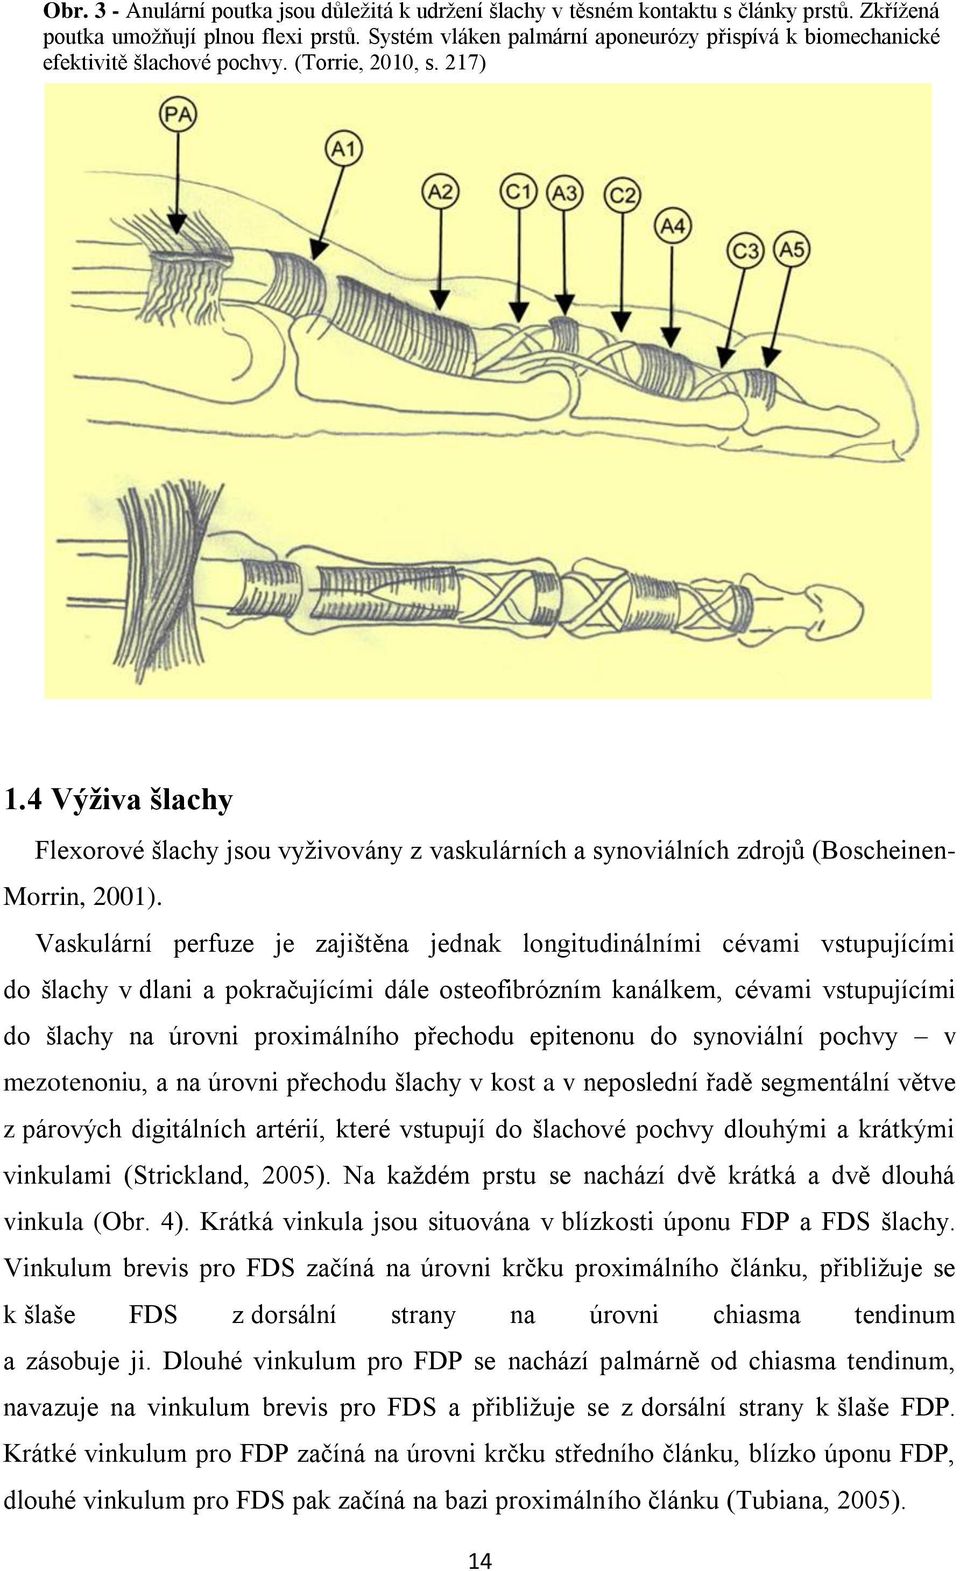 4 Výživa šlachy Flexorové šlachy jsou vyţivovány z vaskulárních a synoviálních zdrojů (Boscheinen- Morrin, 2001).